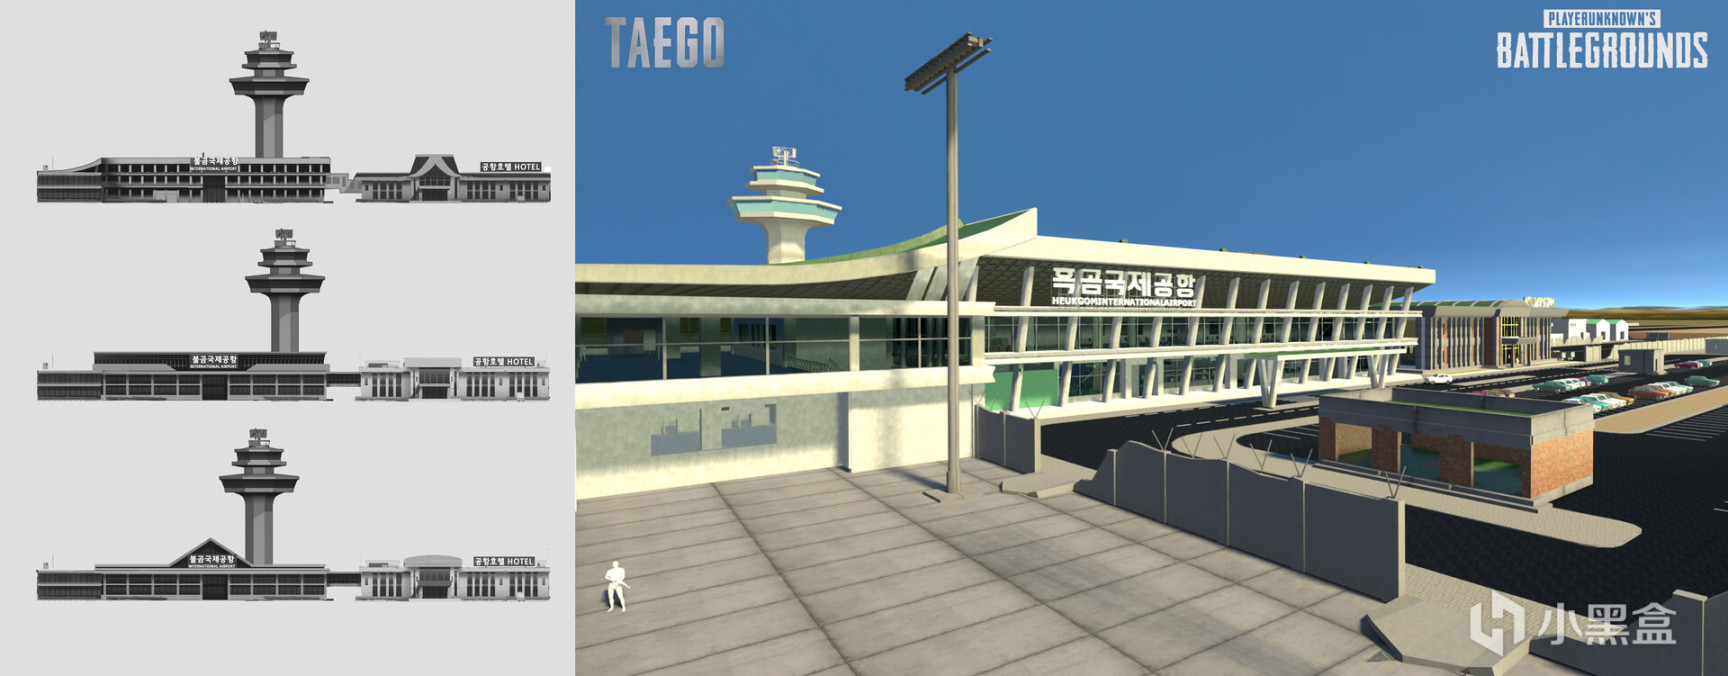 【绝地求生】泰戈建筑设计图公布：机场废稿现代感十足-第1张